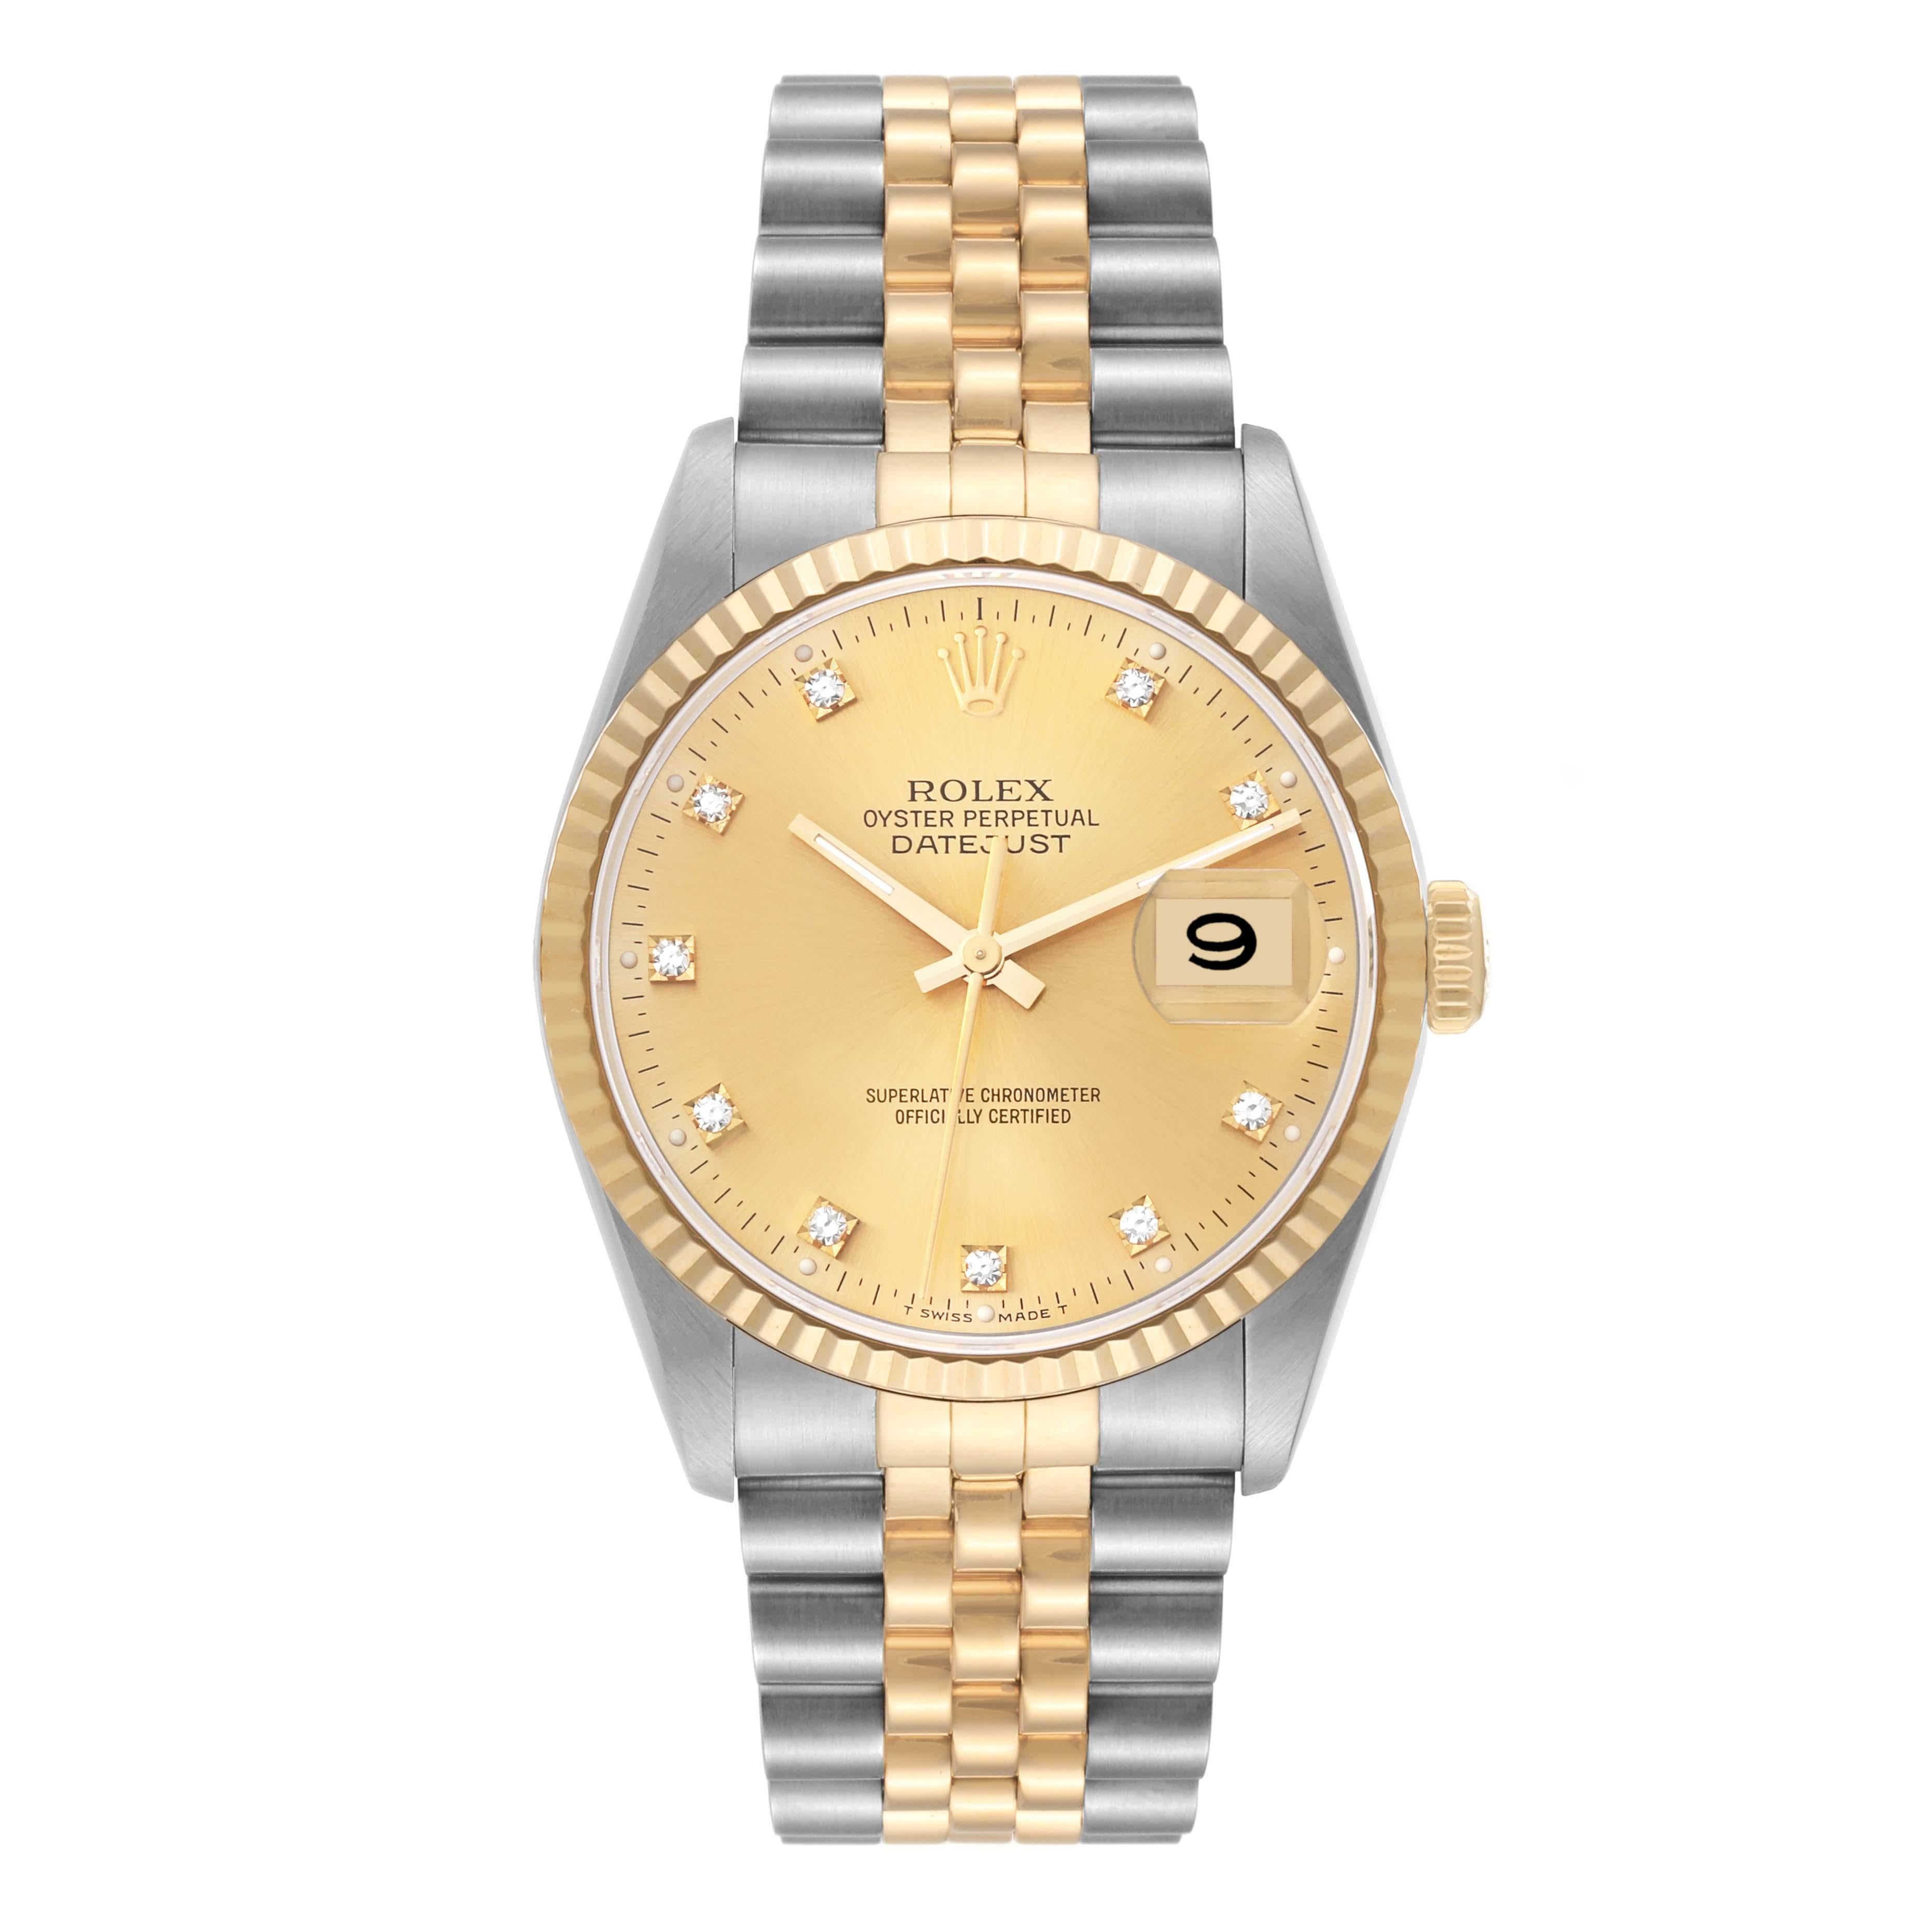 Rolex Datejust Champagne Diamond Dial Steel Yellow Gold Mens Watch 16233. Mouvement automatique à remontage automatique, officiellement certifié chronomètre. Boîtier en acier inoxydable de 36.0 mm de diamètre.  Logo Rolex sur une couronne en or